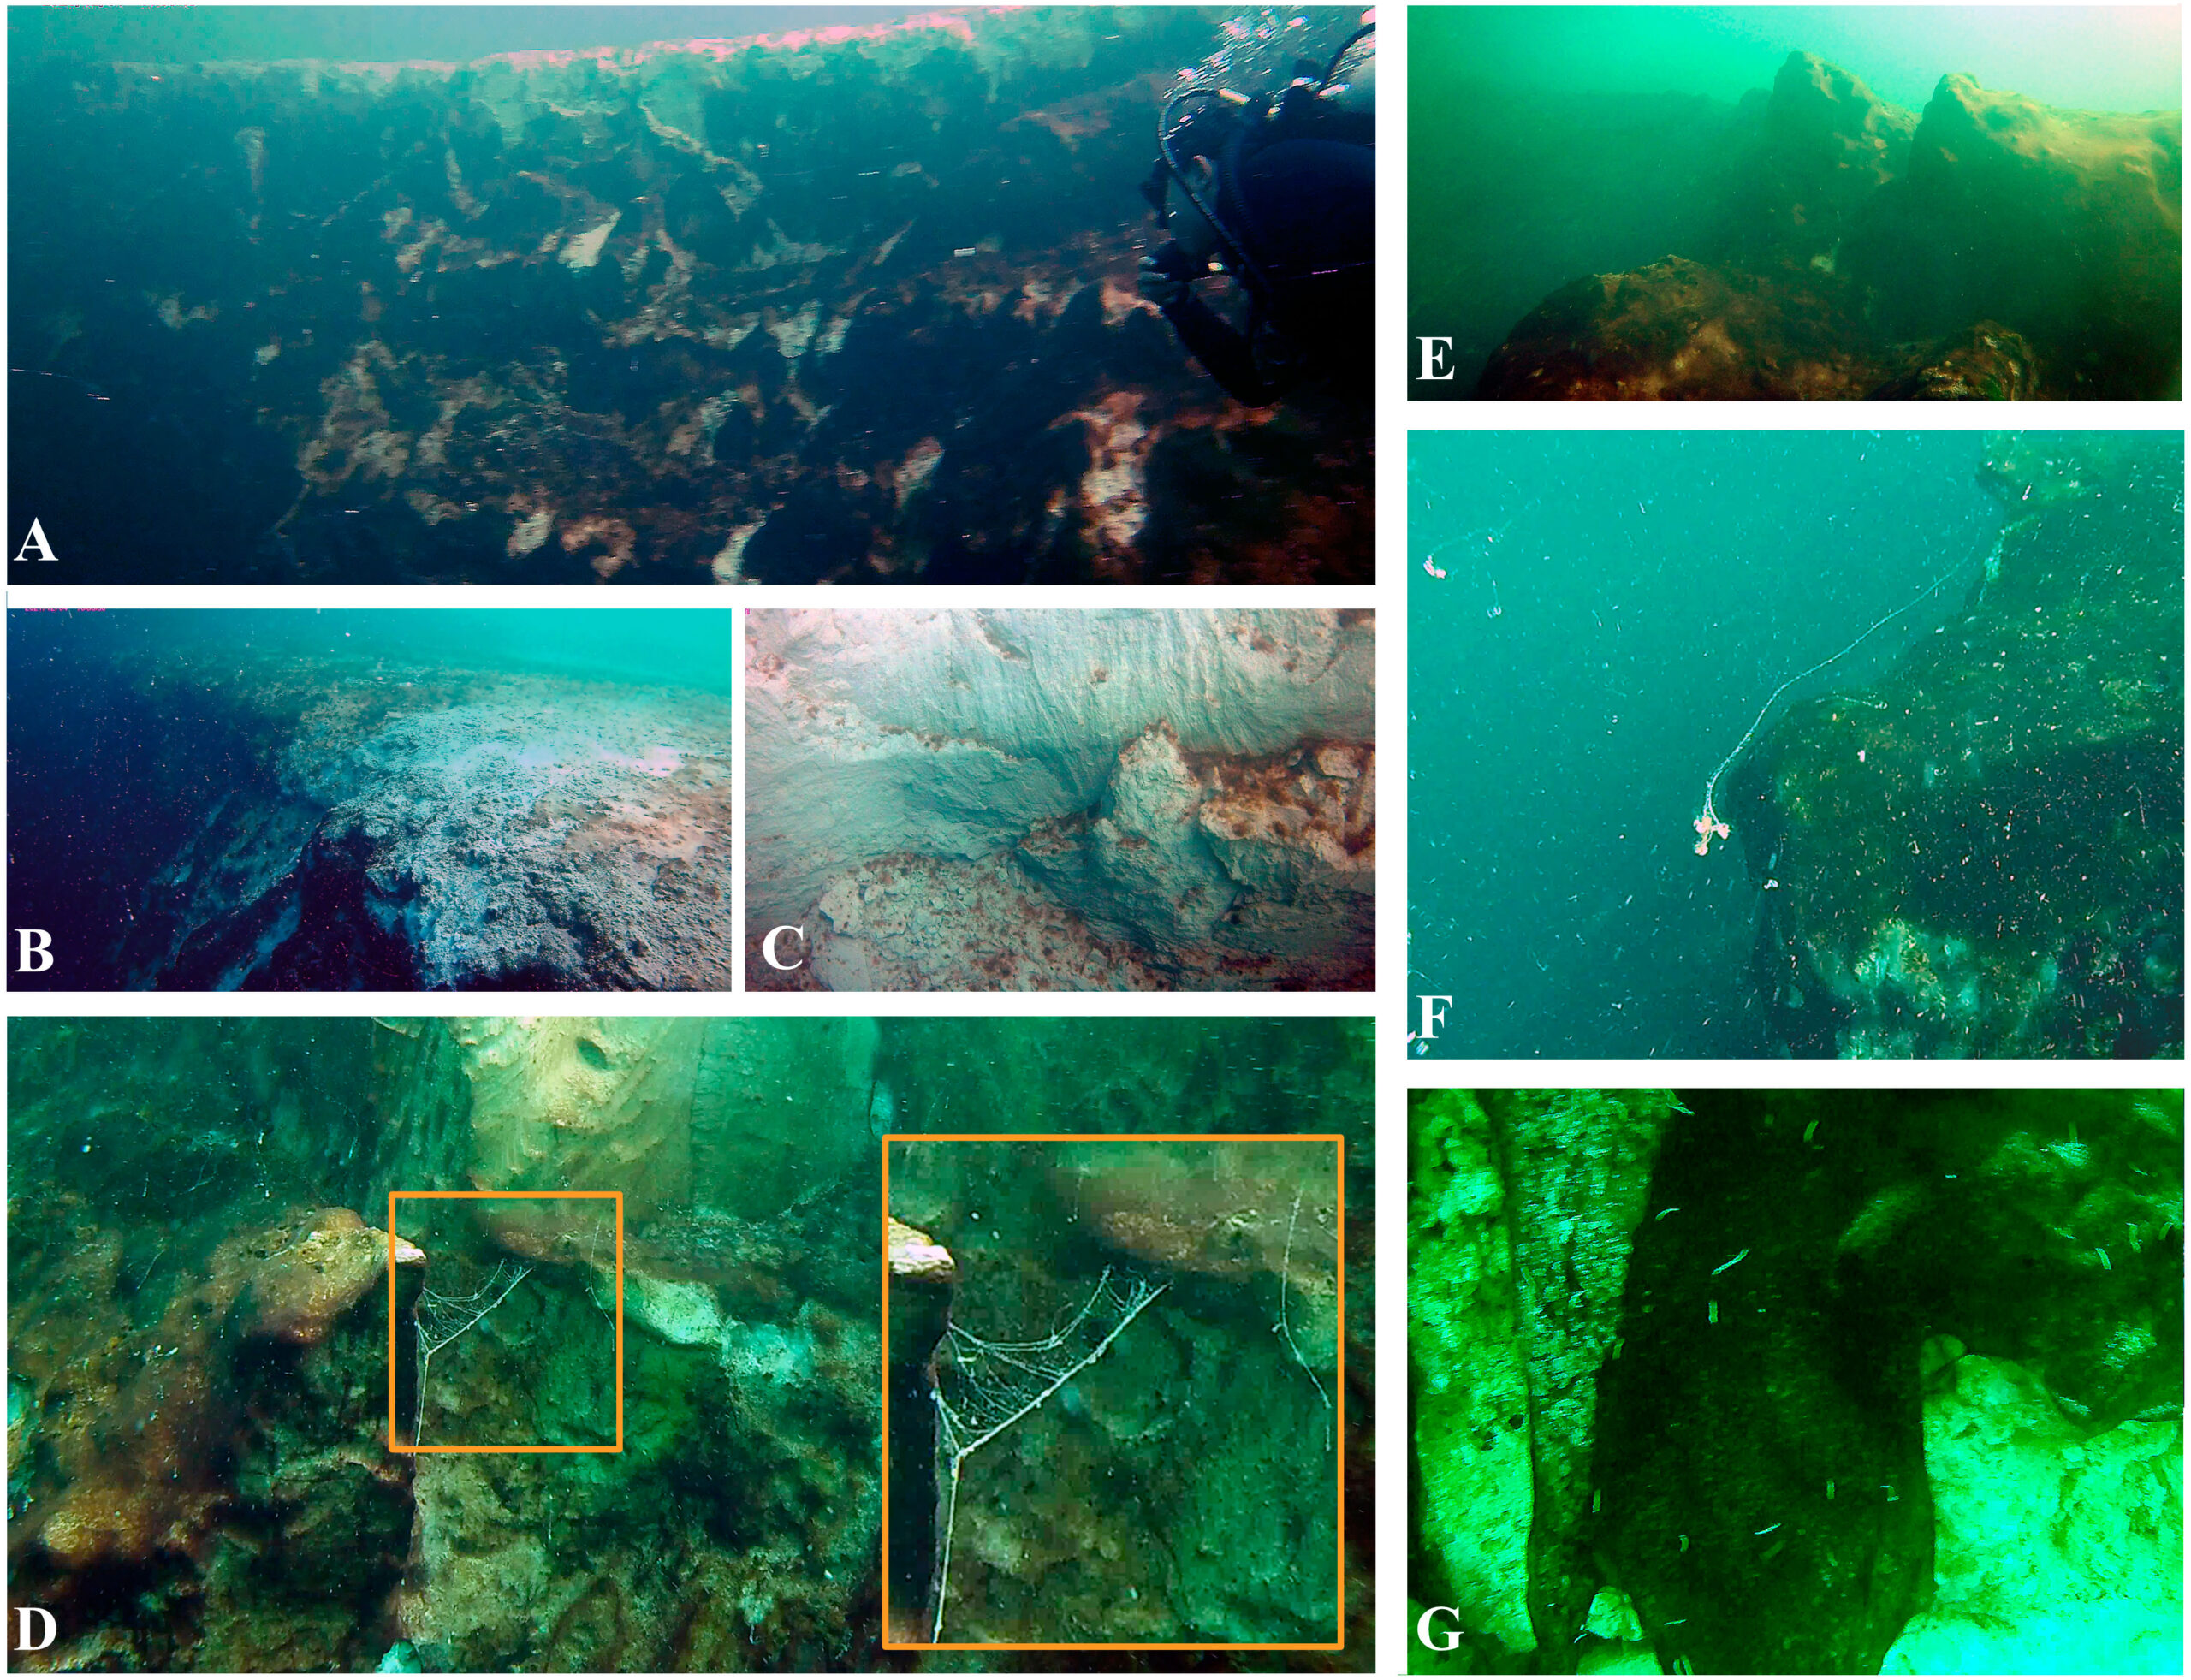 Identifican segundo agujero azul más profundo del mundo en bahía de Chetumal, México